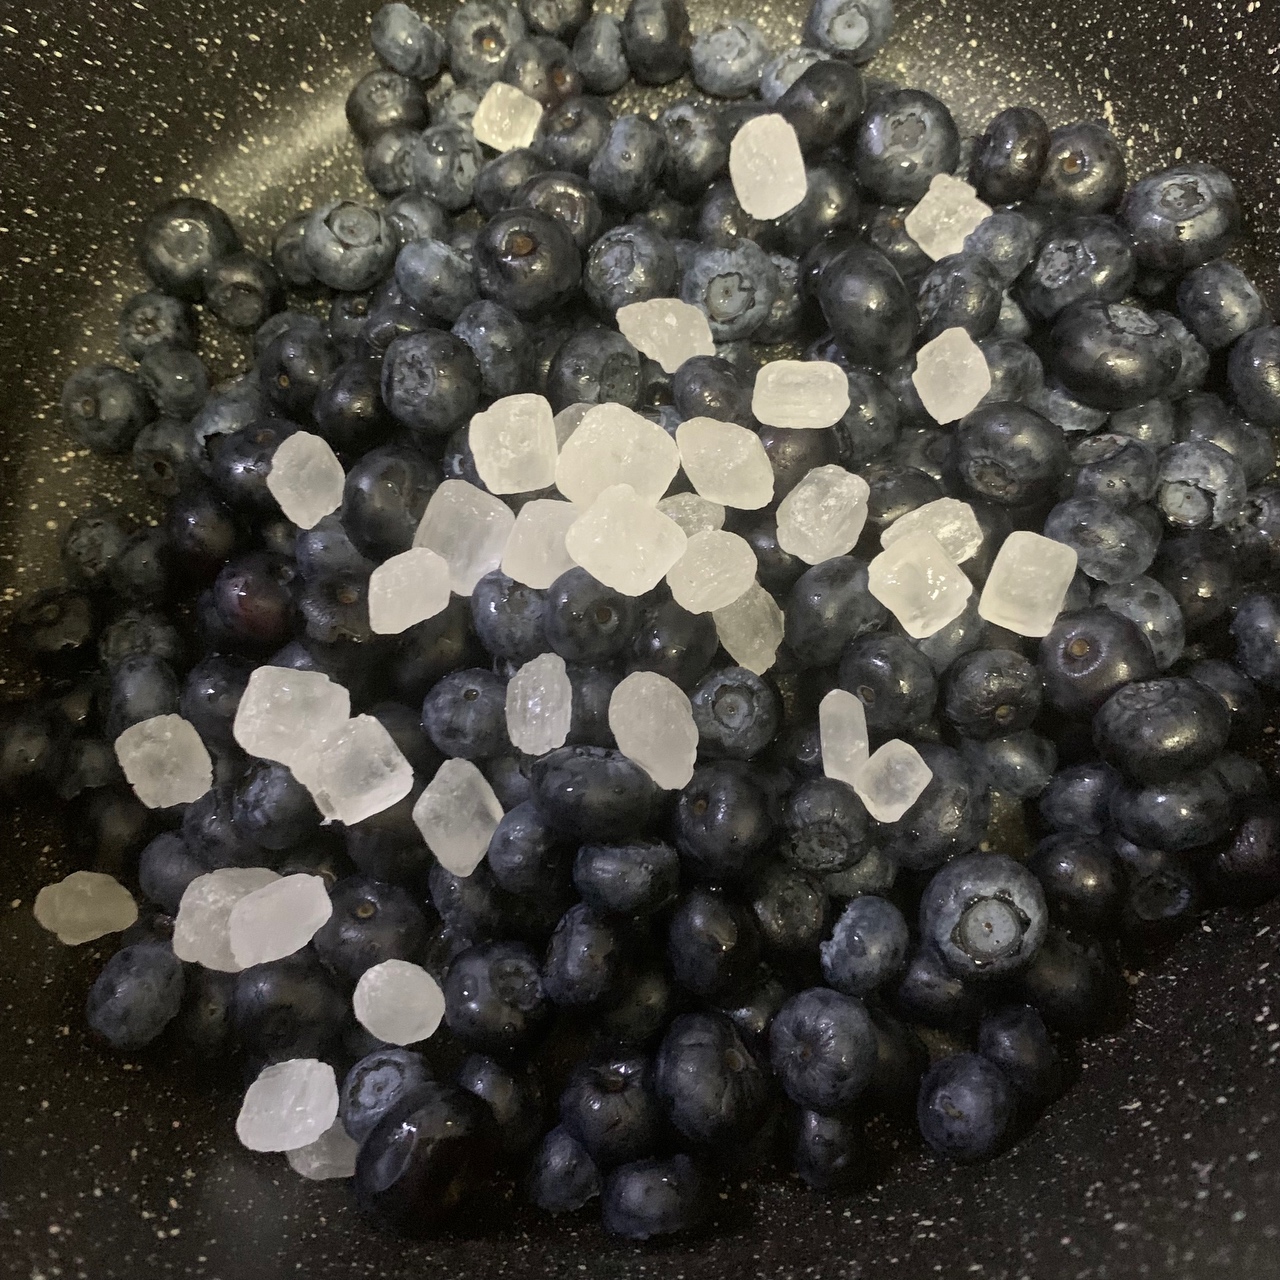 自制蓝莓果酱的做法